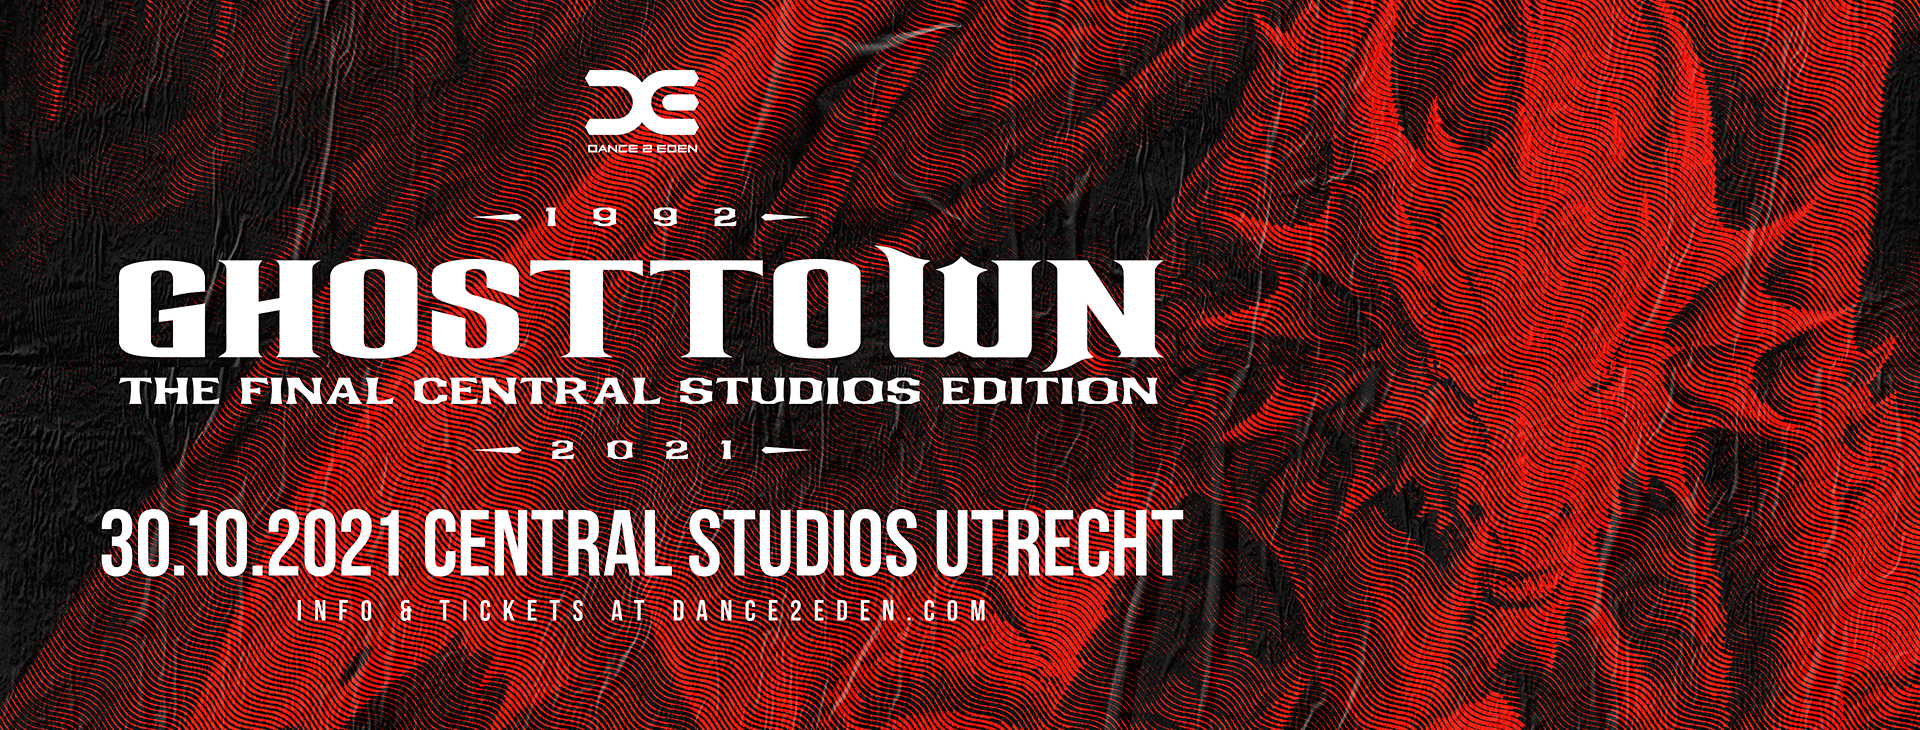 Ghosttown verplaatst naar 3 april 2021